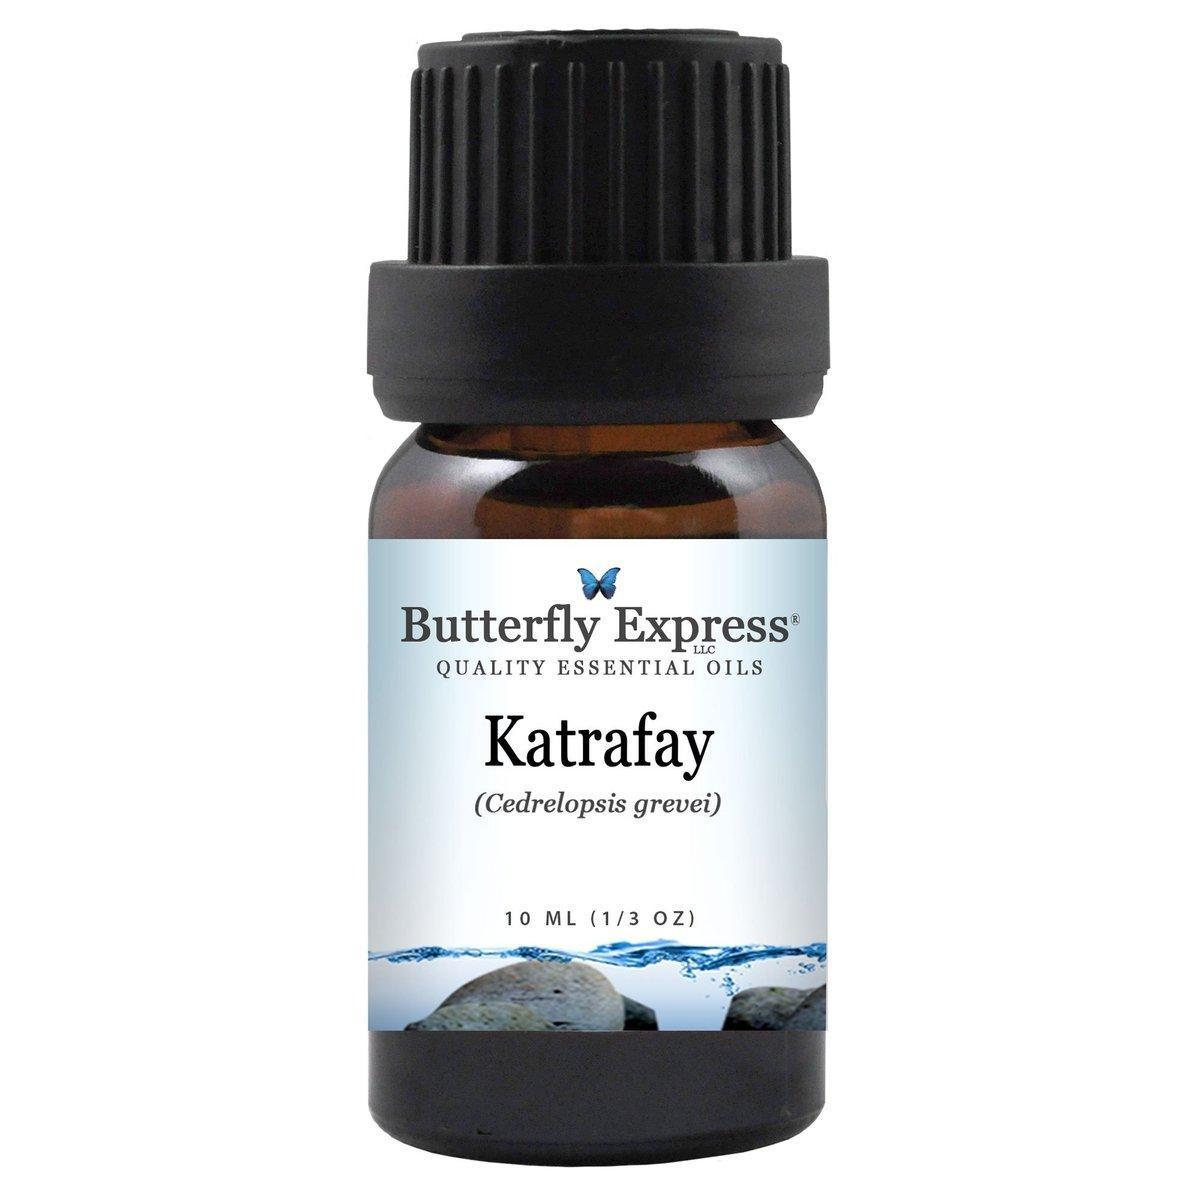 Katrafay essential oils